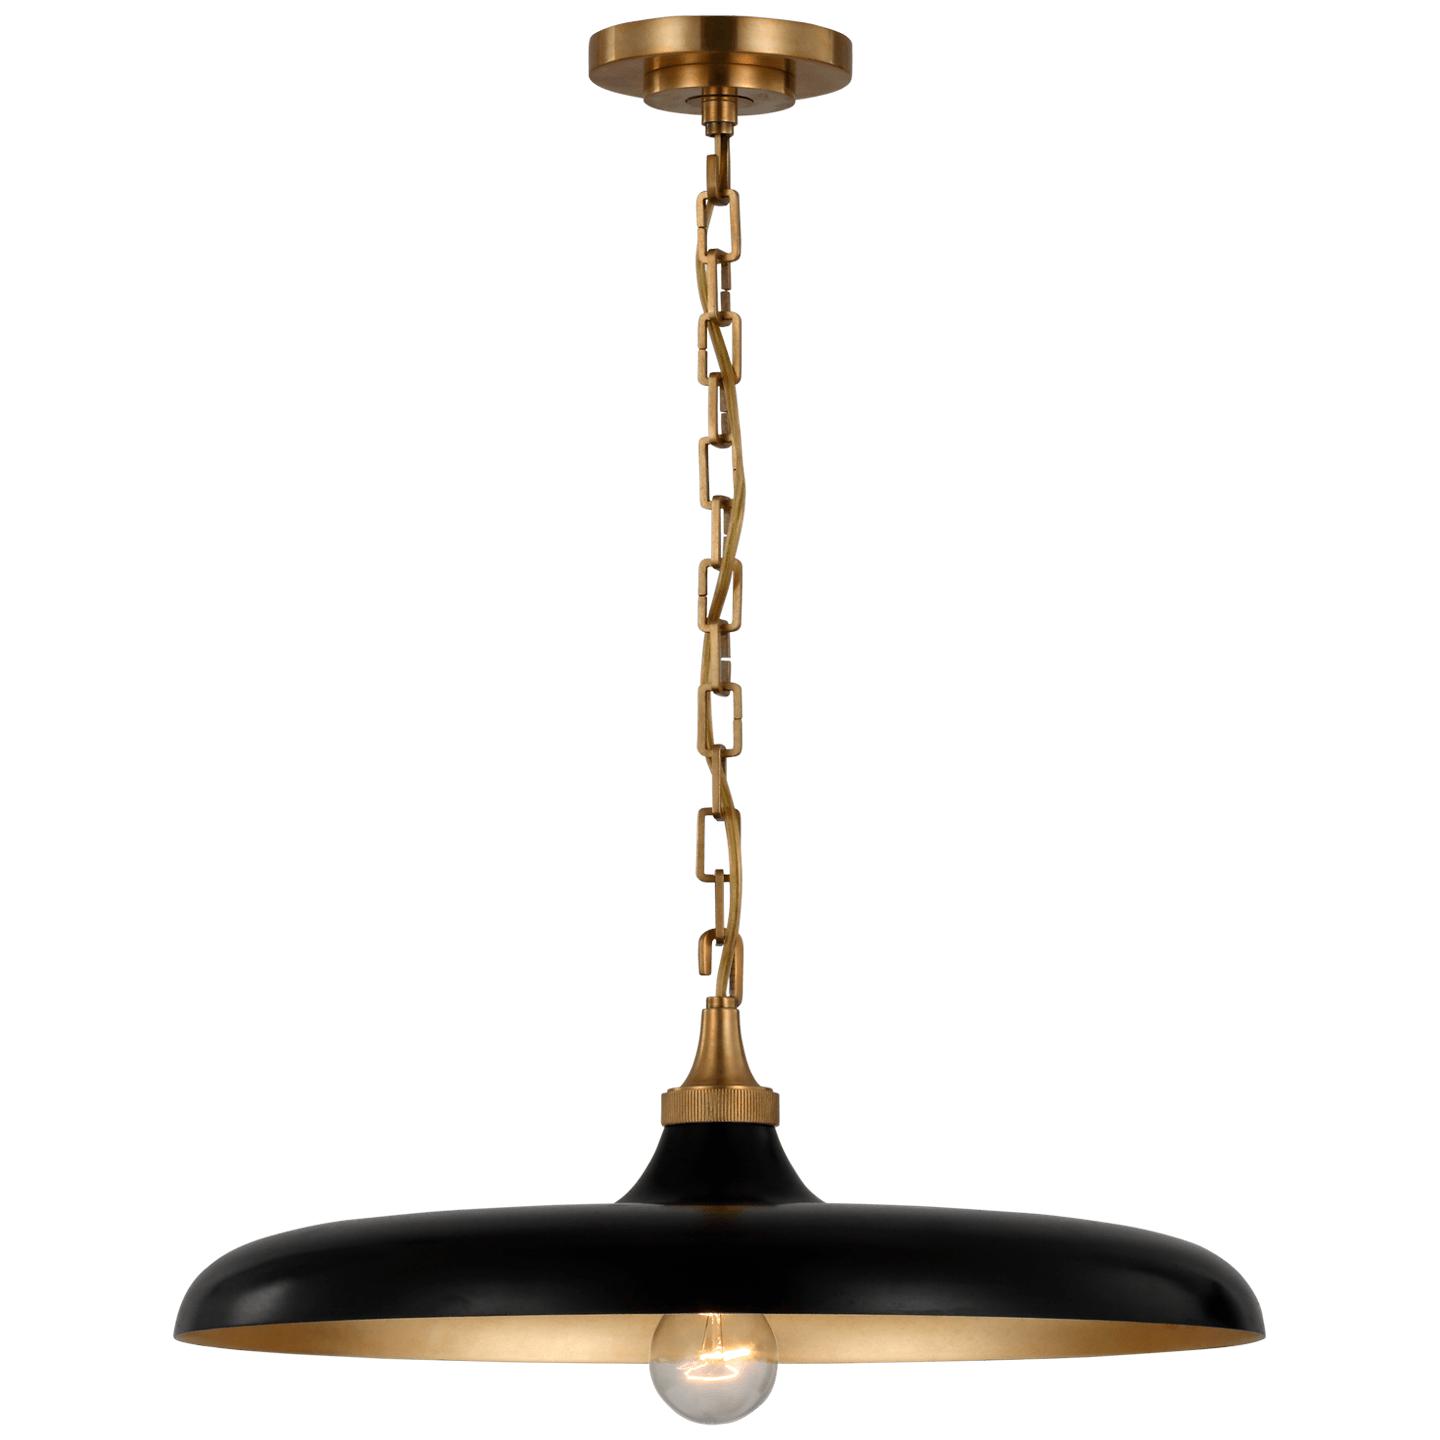 Купить Подвесной светильник Piatto Medium Pendant в интернет-магазине roooms.ru